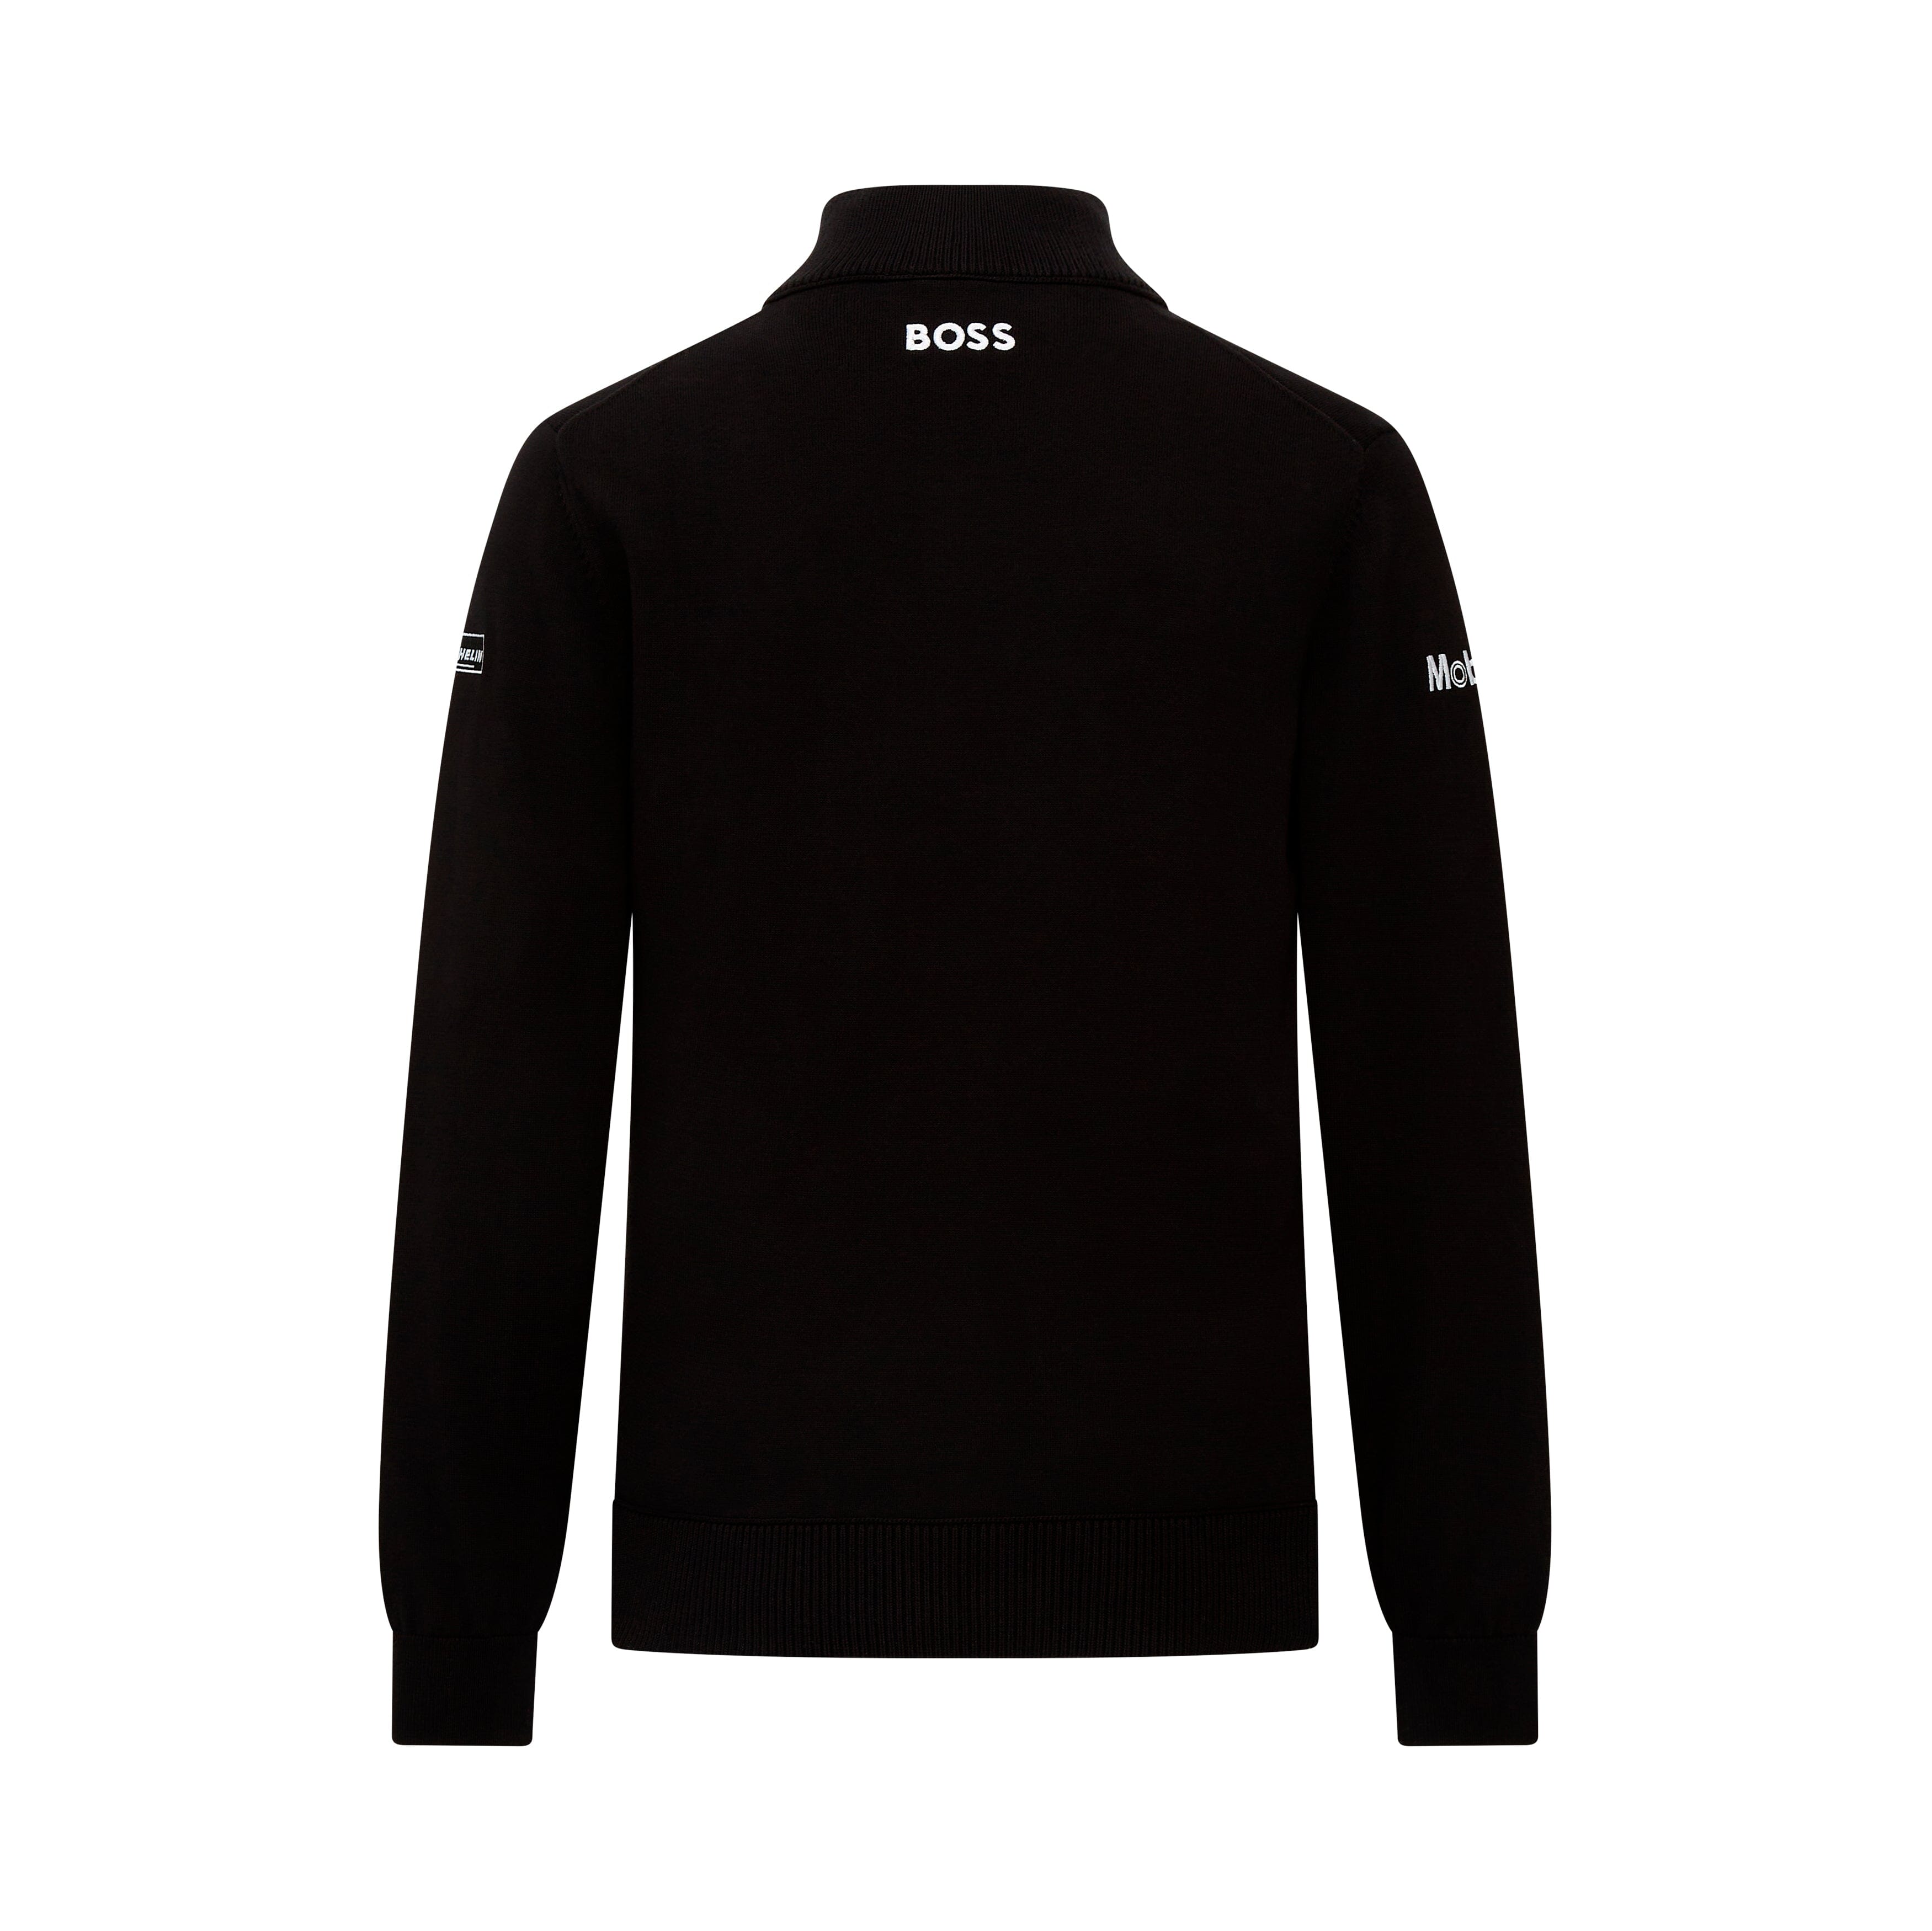 Porsche Motorsport Team Knitted Sweater - Black